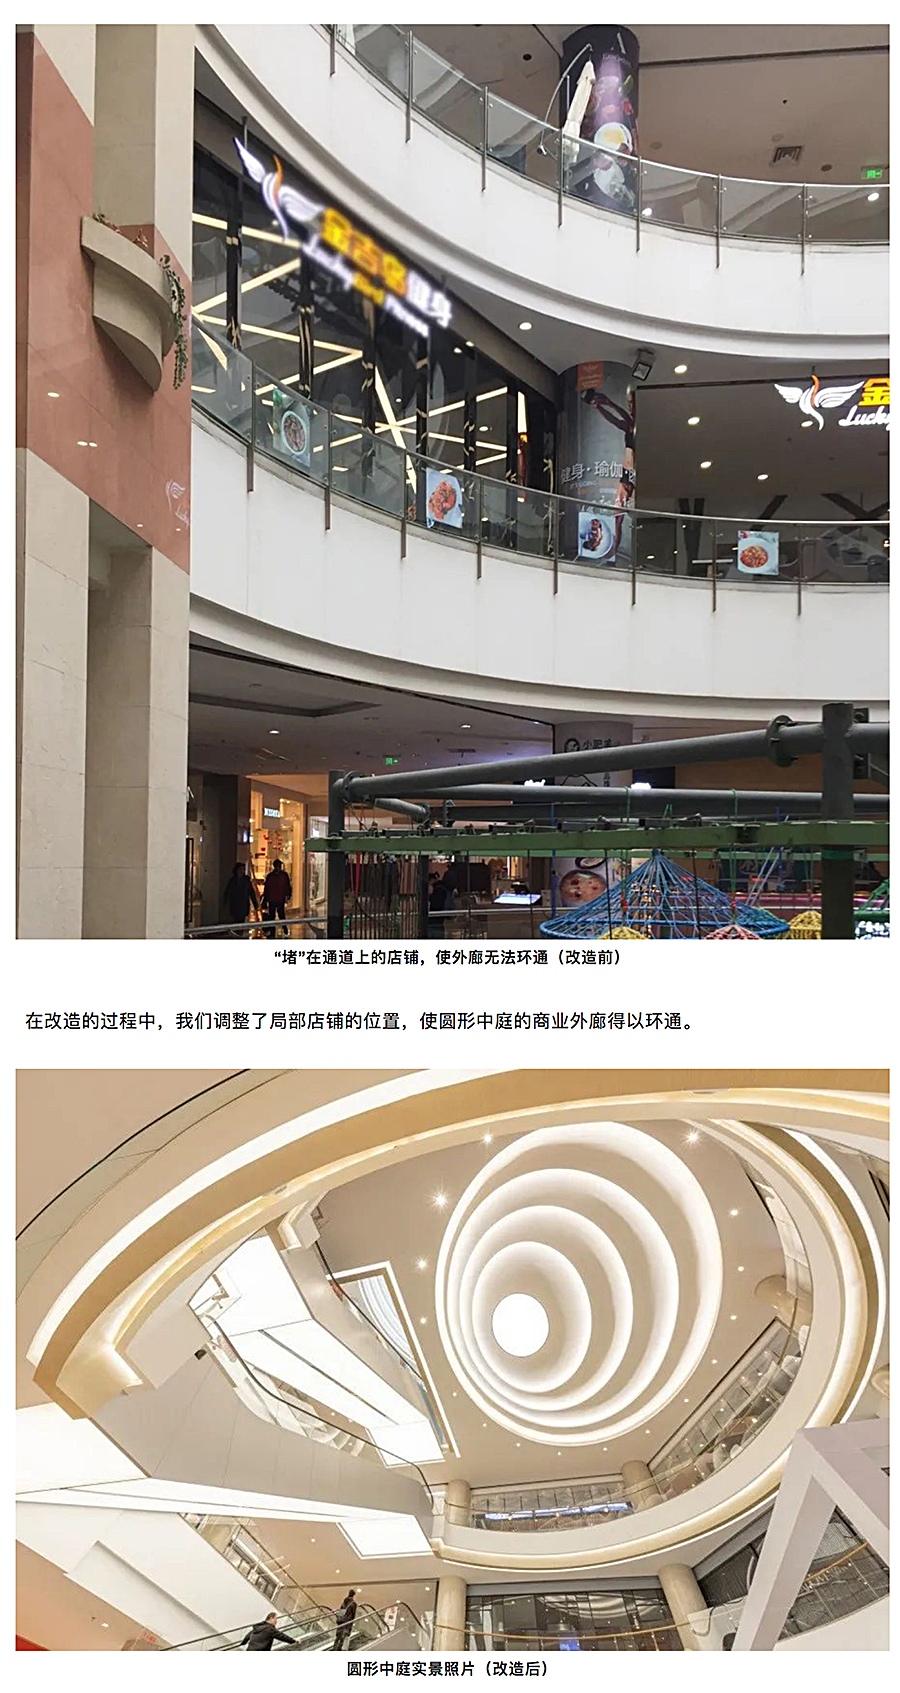 与时俱进的升级改造-_-南京龙江新城市广场一期商业改造_0009_图层-10.jpg